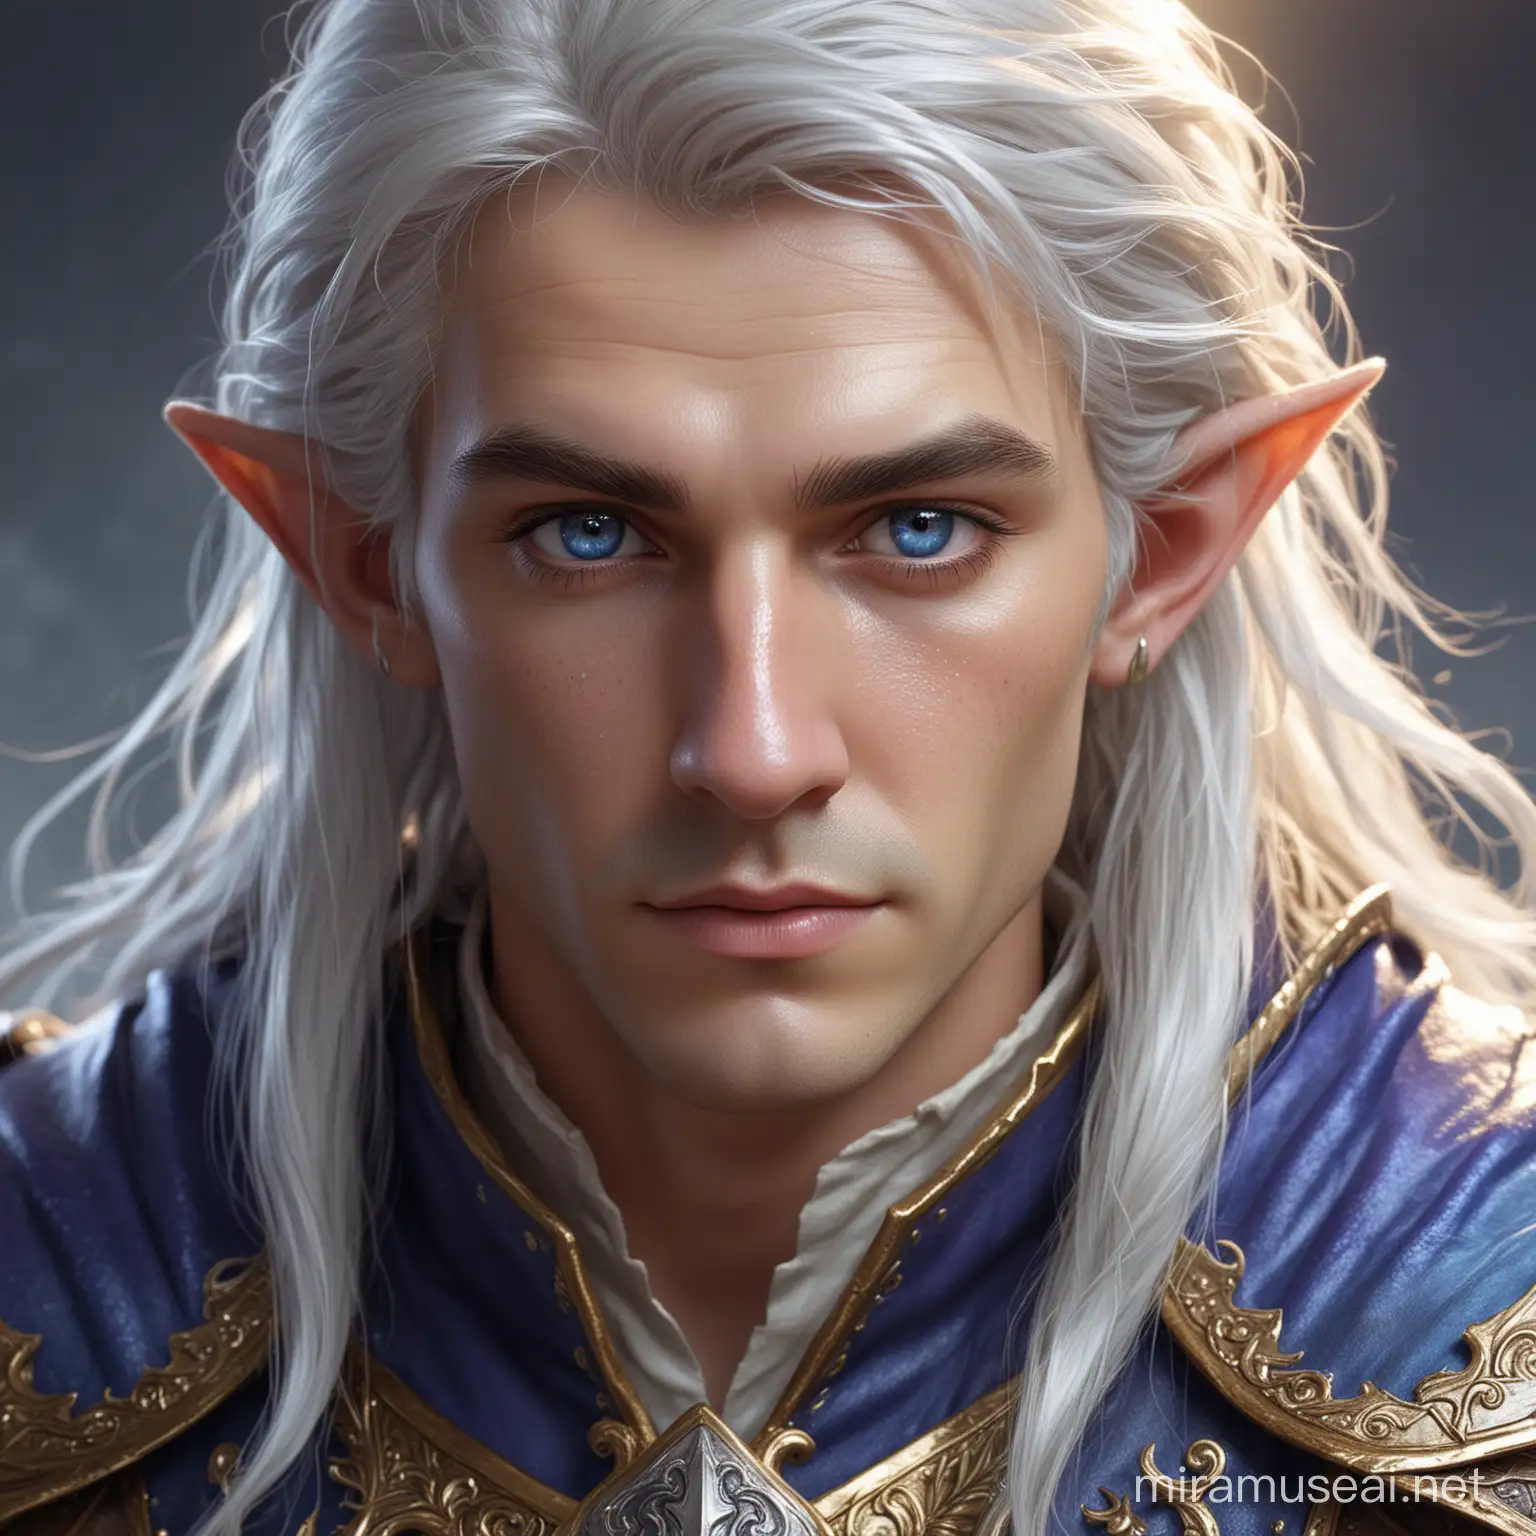 Le portrait d'un personnage de jeu de rôle. Il s'agit d'un elfe à la peau albâtre. Il porte ses cheveux mi-long, blanc-argenté de manière relachée relaché. Ses yeux sont bleu, pailletés d'or. Il possèdes des habits de bardes avec une armure en cuir, dans des coloris bleu et violet